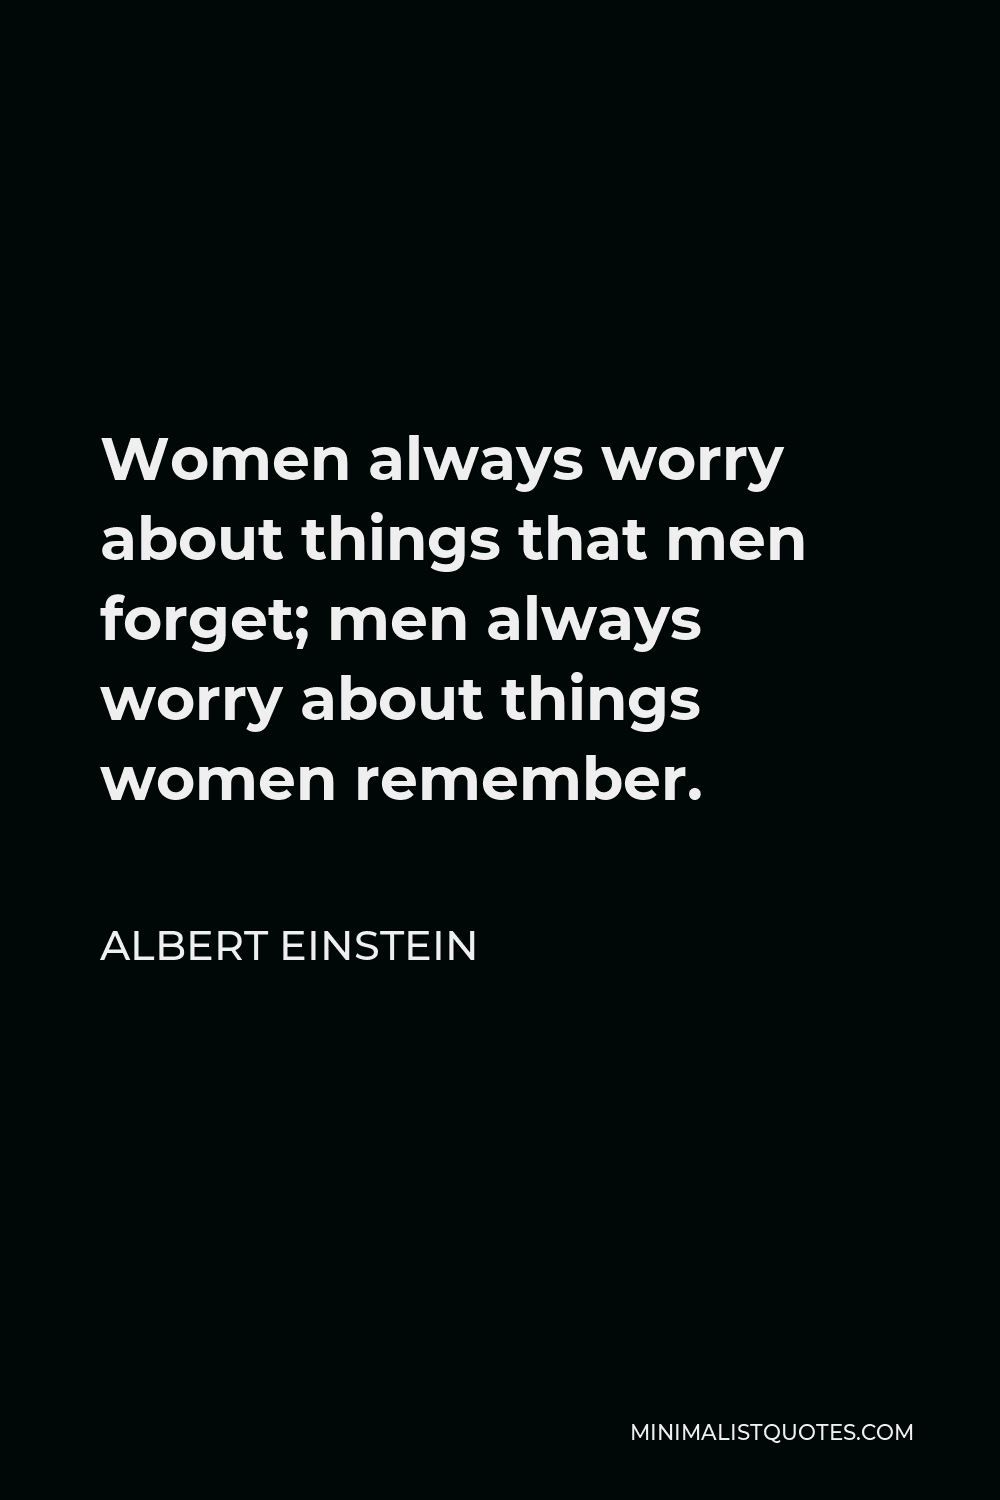 albert einstein quotes about women